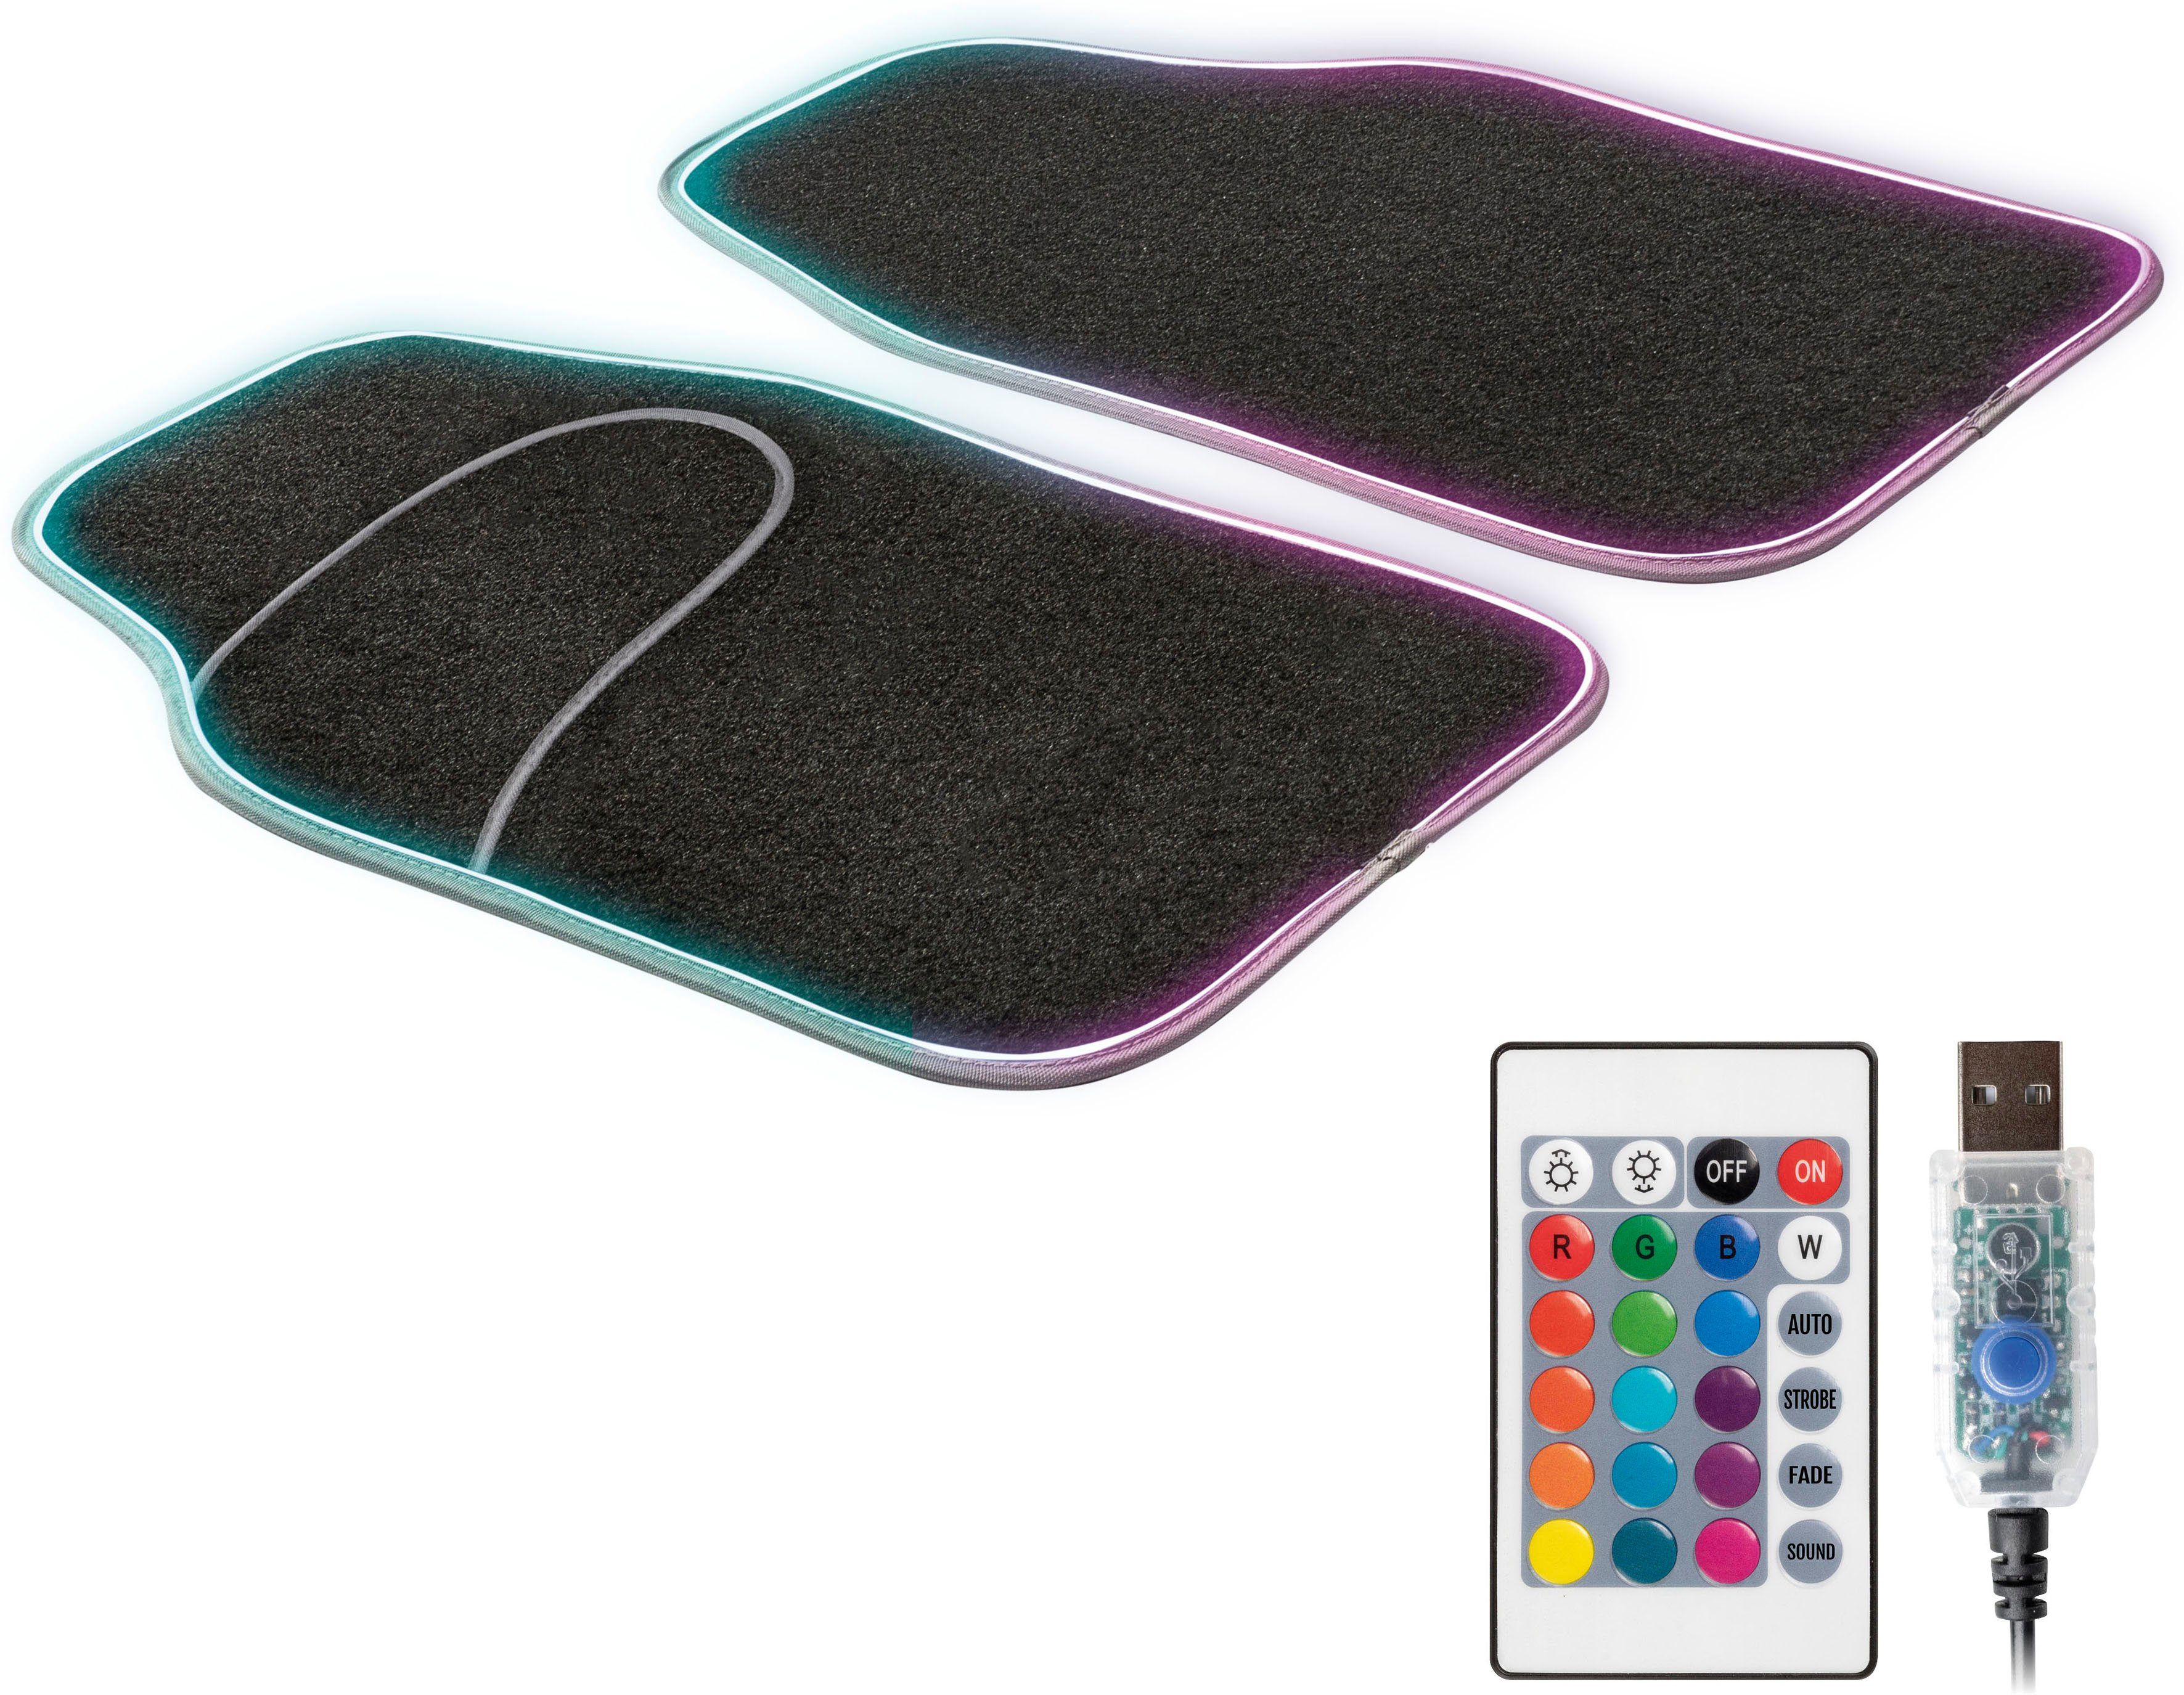 Auto-Fußmatten (2 LED Farbauswahl Ambiente Autoteppich verschiedener mit St), CarComfort